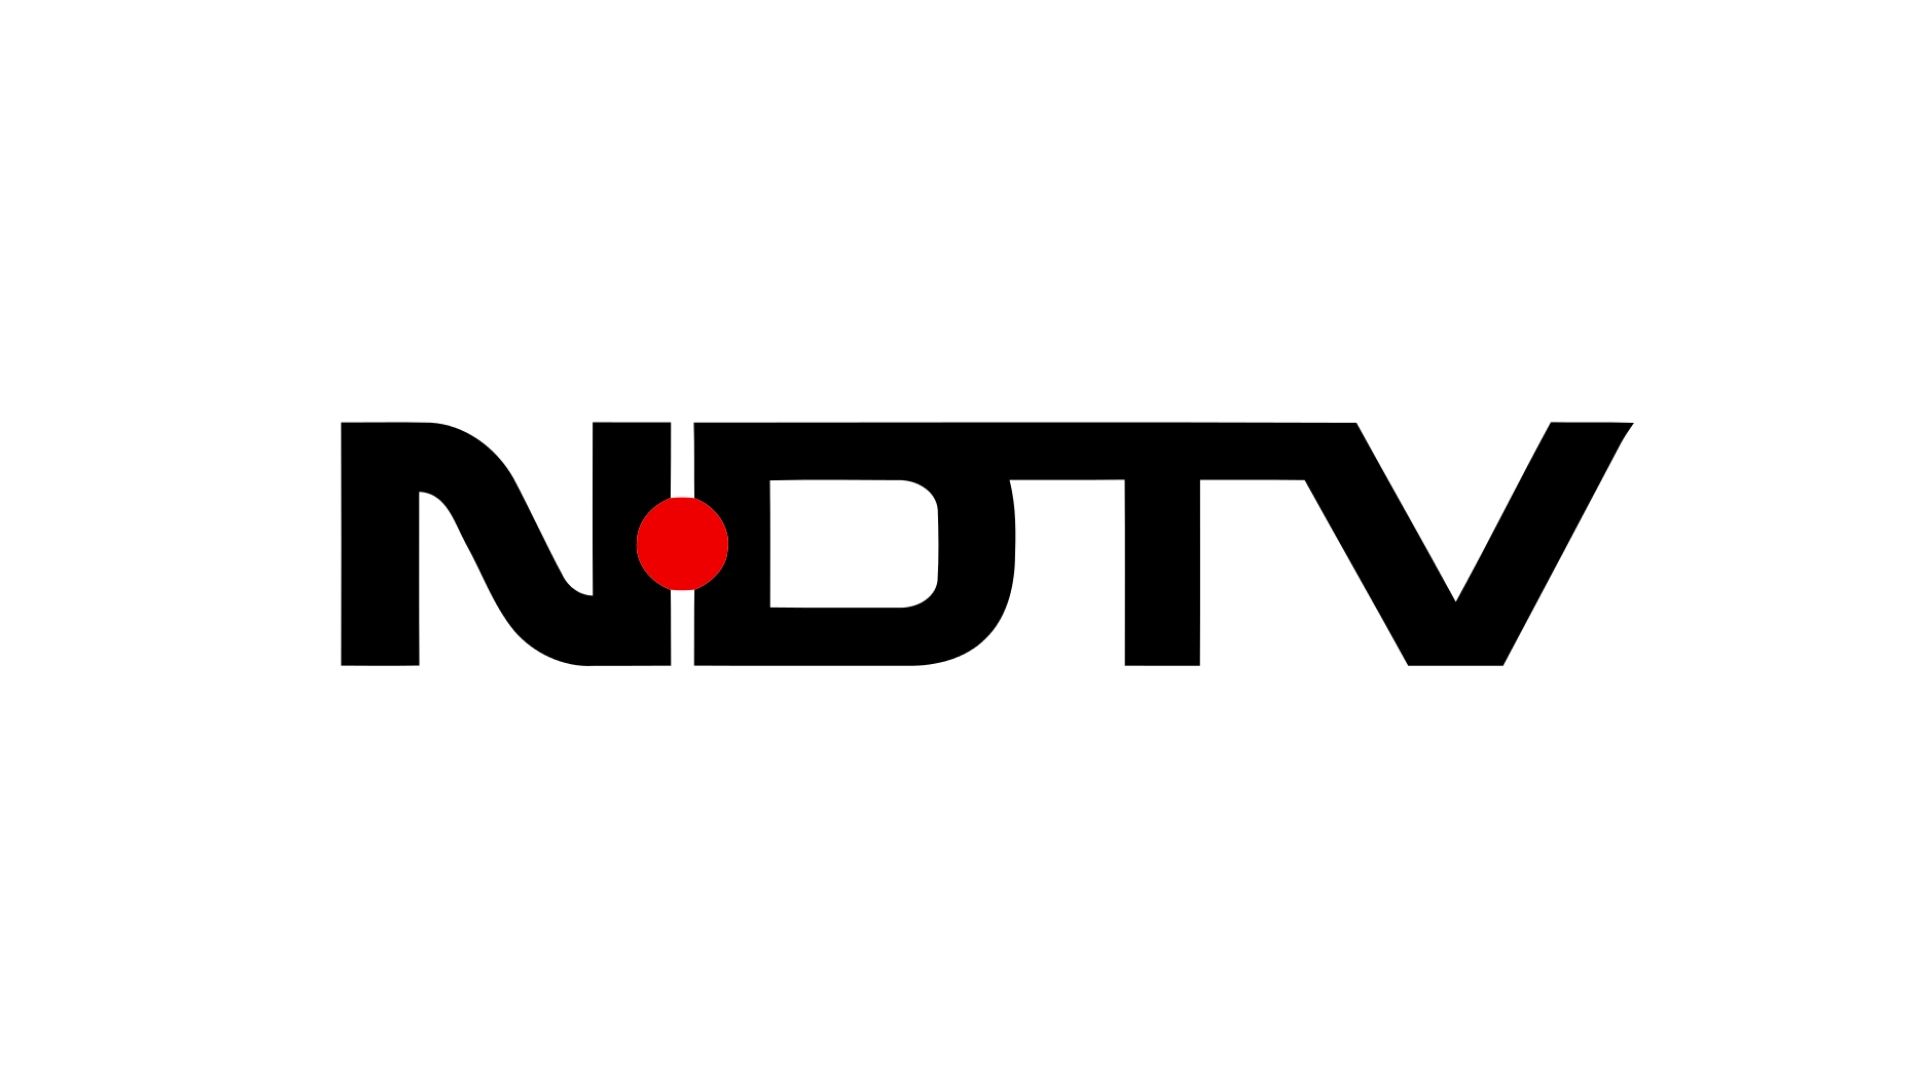 ndtv posts rs 38 cr in profit for tv biz in fy 20-21 - exchange4media